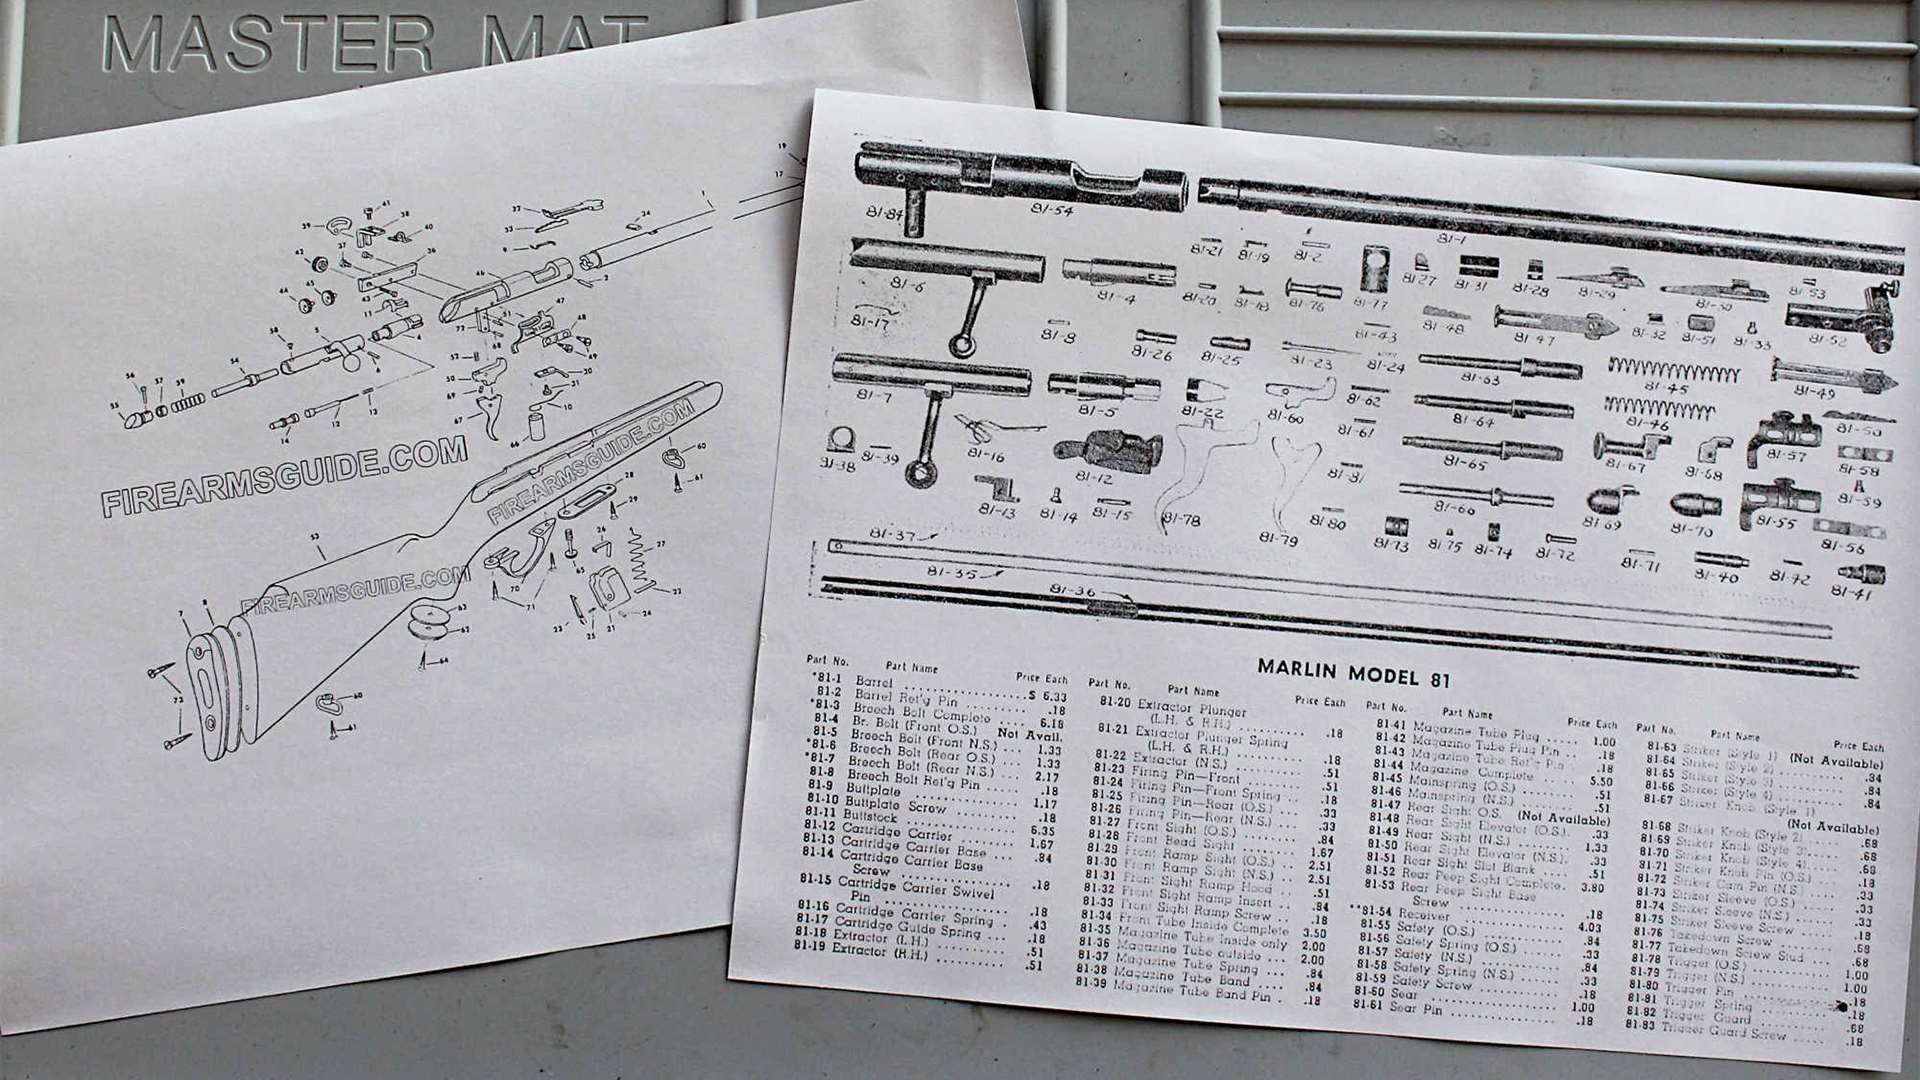 Schematics and gun parts layouts